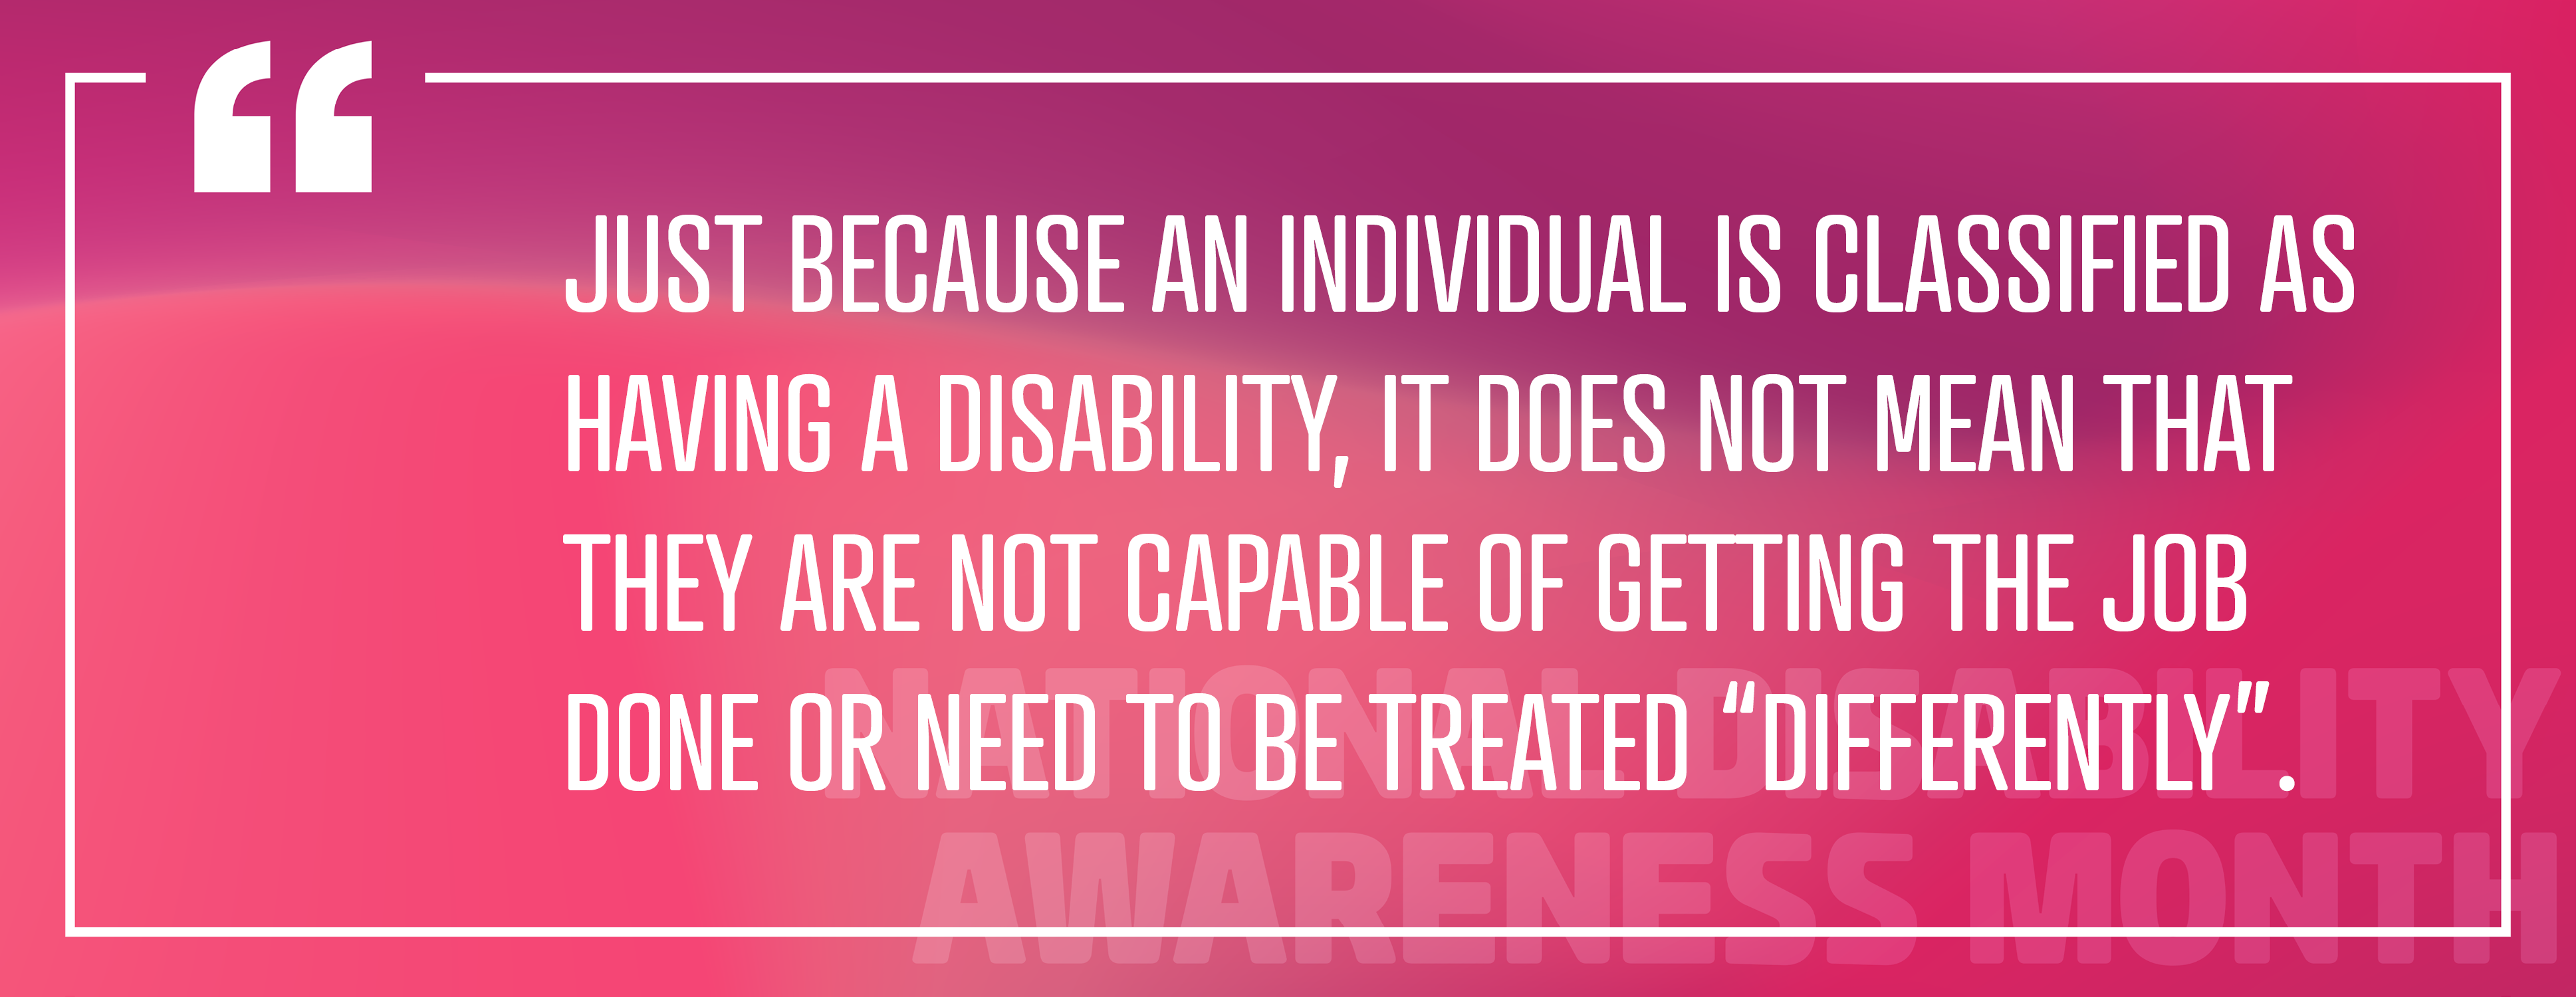 Immagine 4: "Solo perché un individuo è classificato come disabile, ciò non significa che non sia in grado di svolgere il lavoro o debba essere trattato" diversamente "."